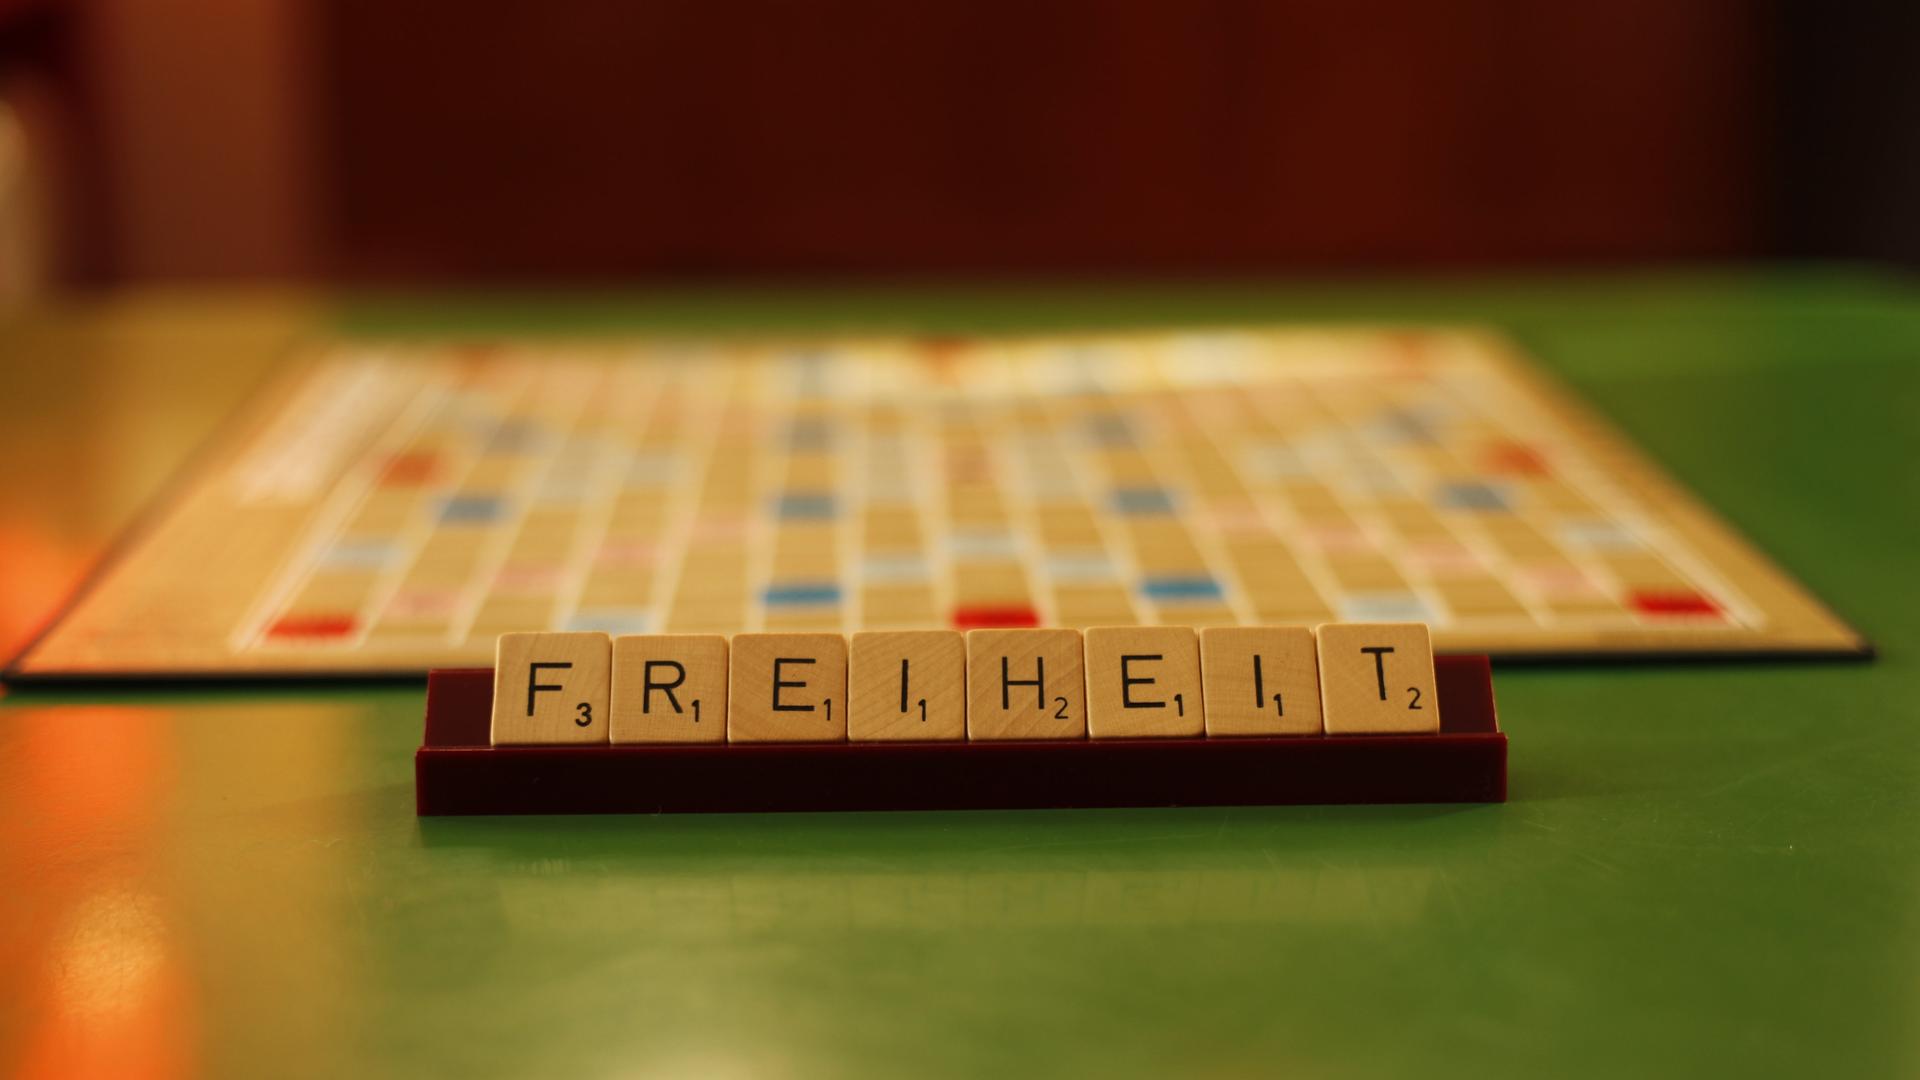 Das Wort "Freiheit" ist mit den Spielsteinen bei dem Spiel Scrabble gelegt.